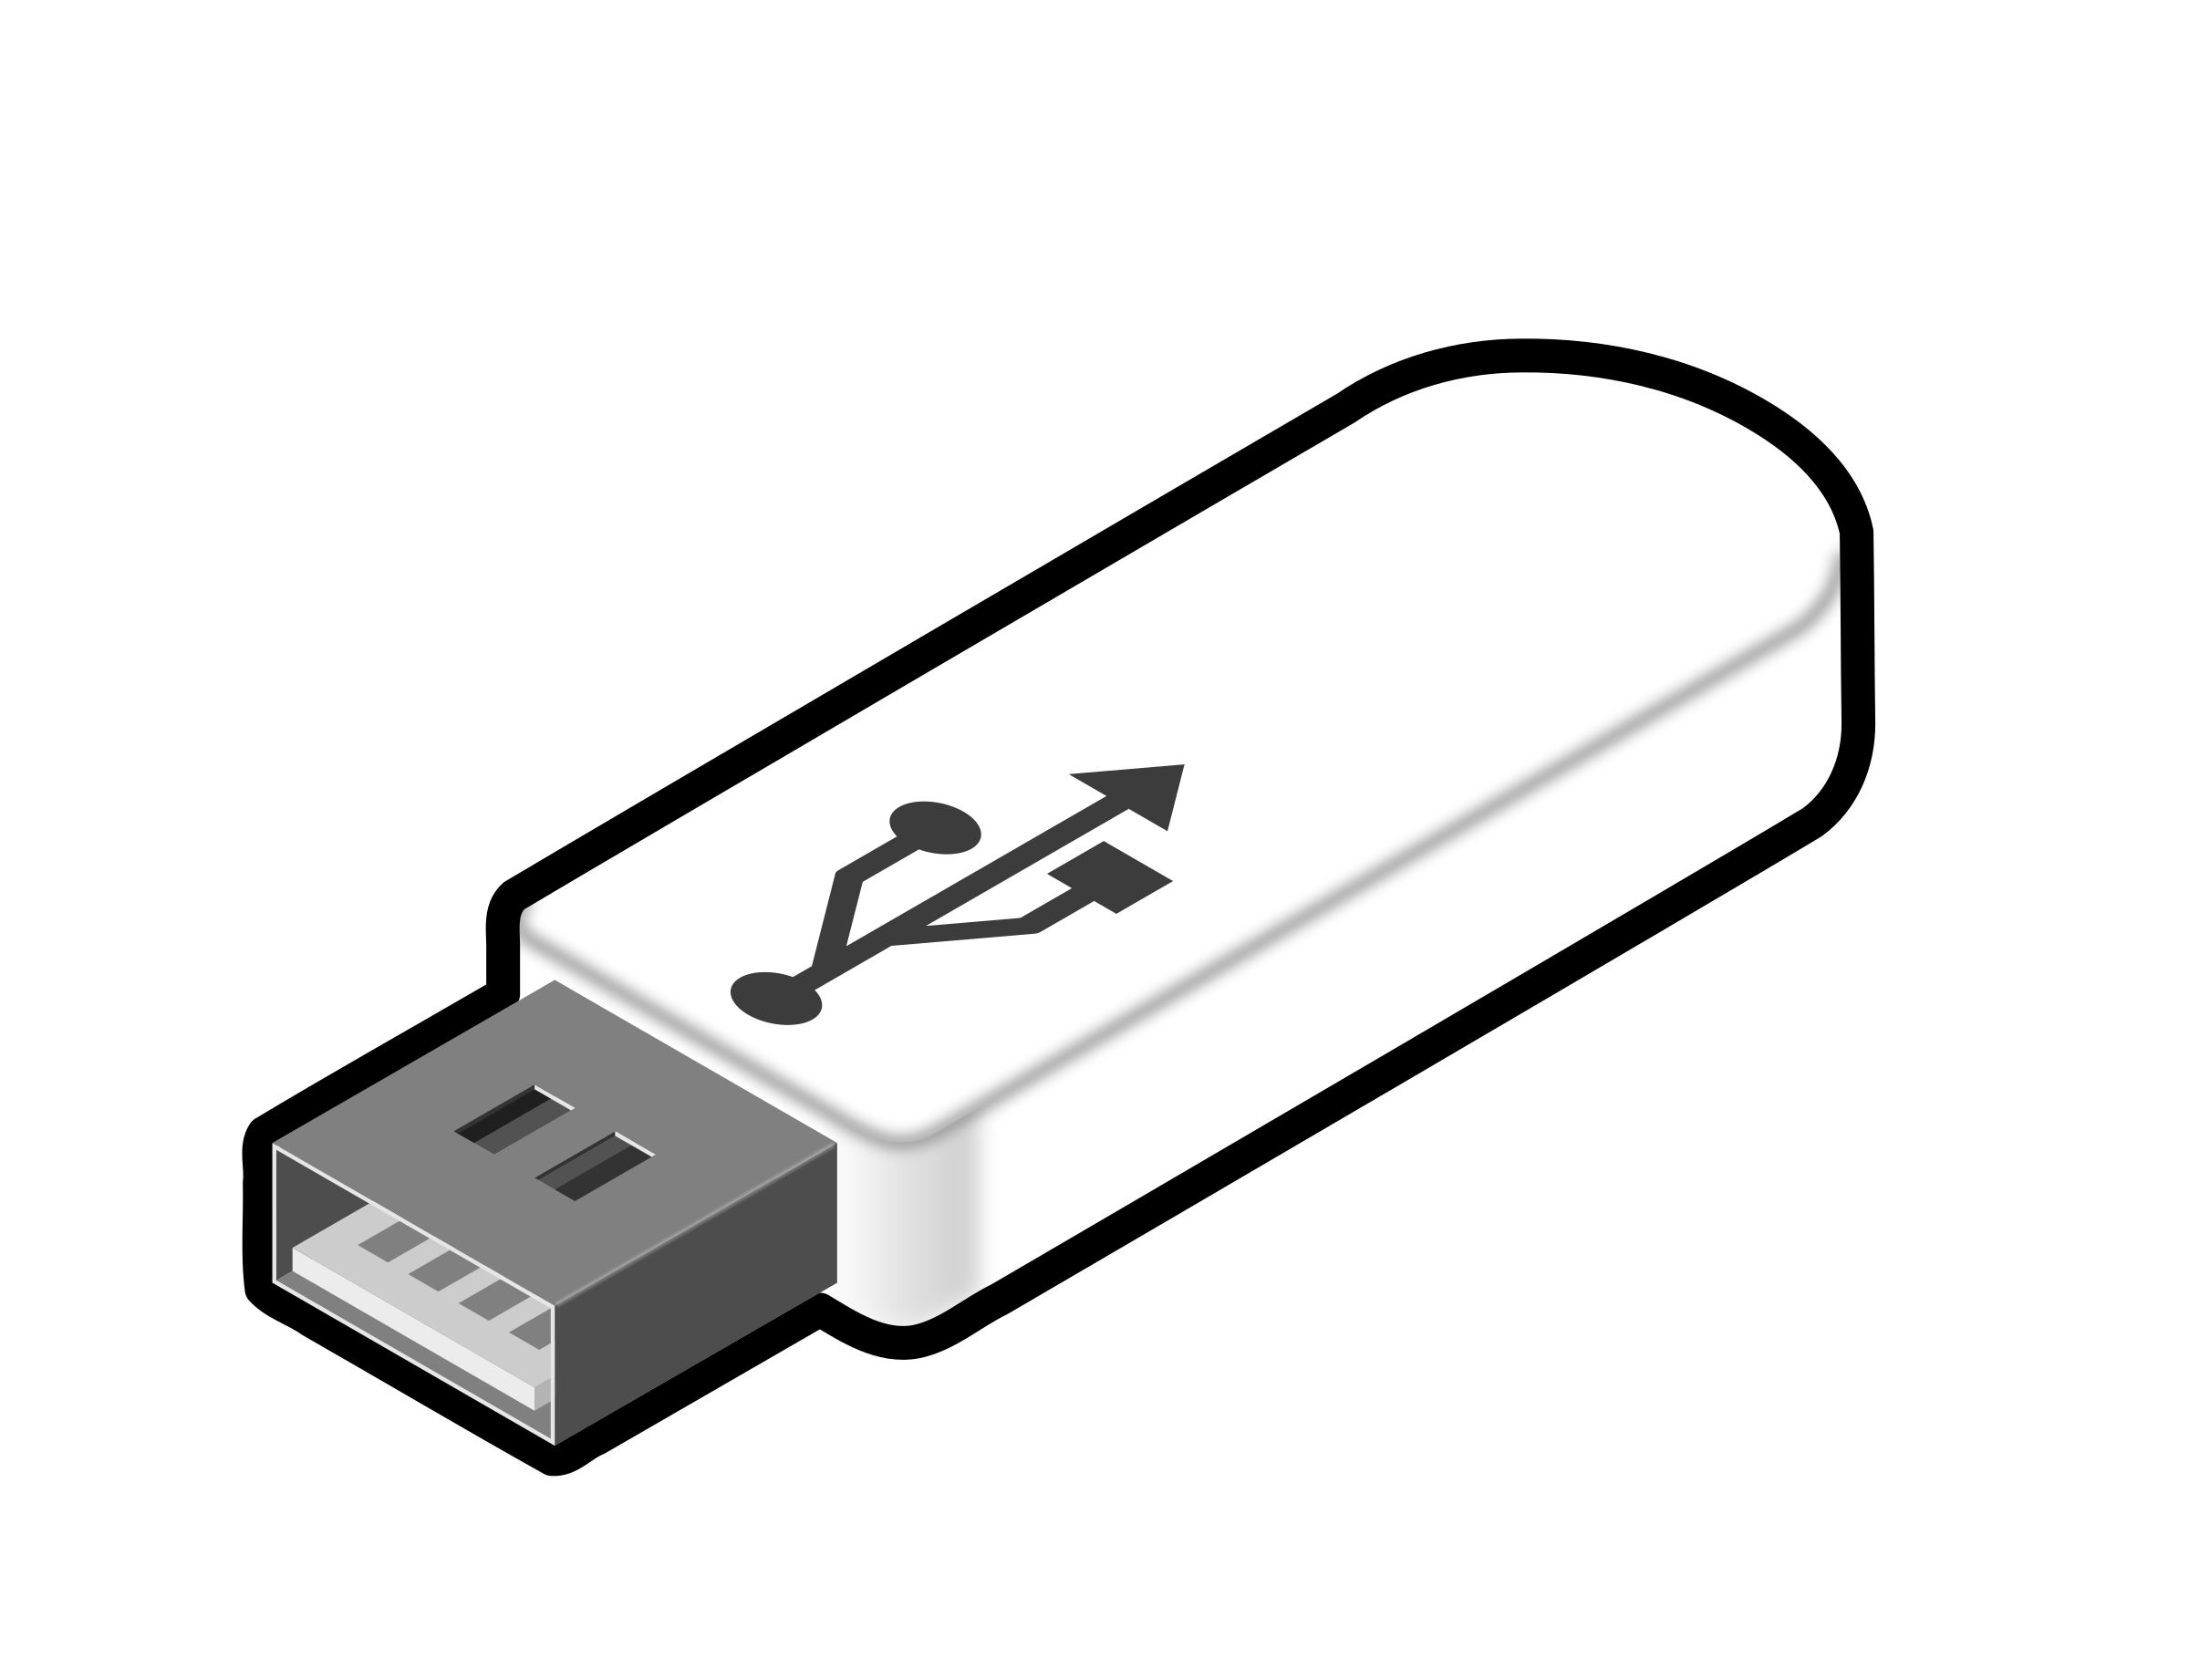 USB Thumb Drive 3 SVG Clip arts